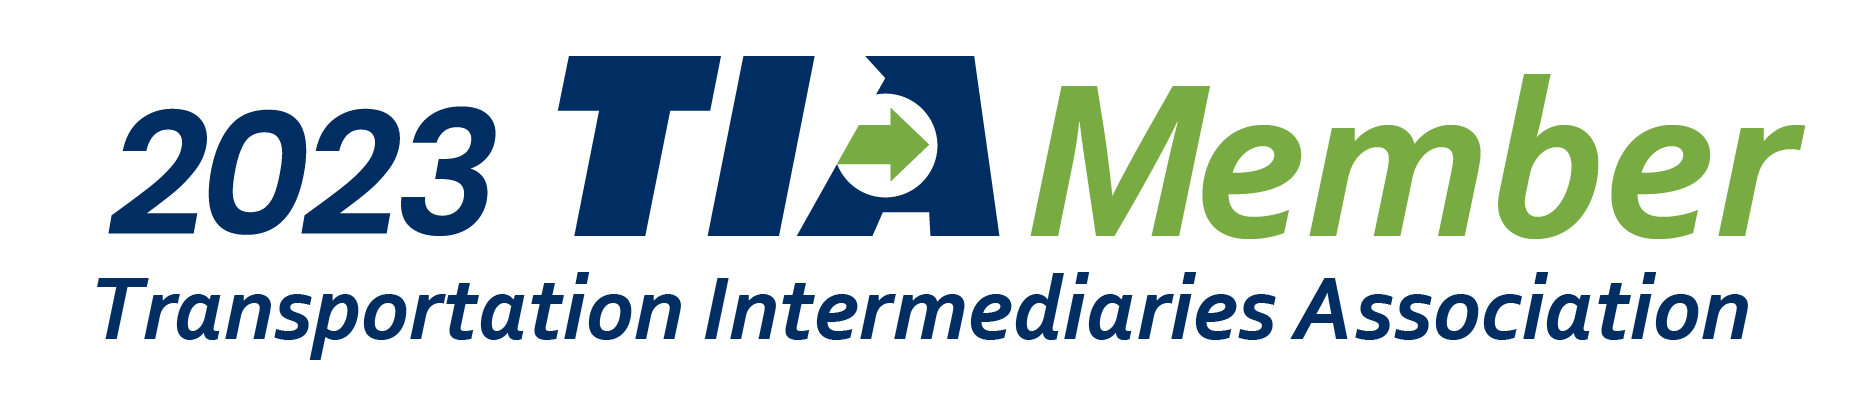 Logo - 2023 TIA Member (002)